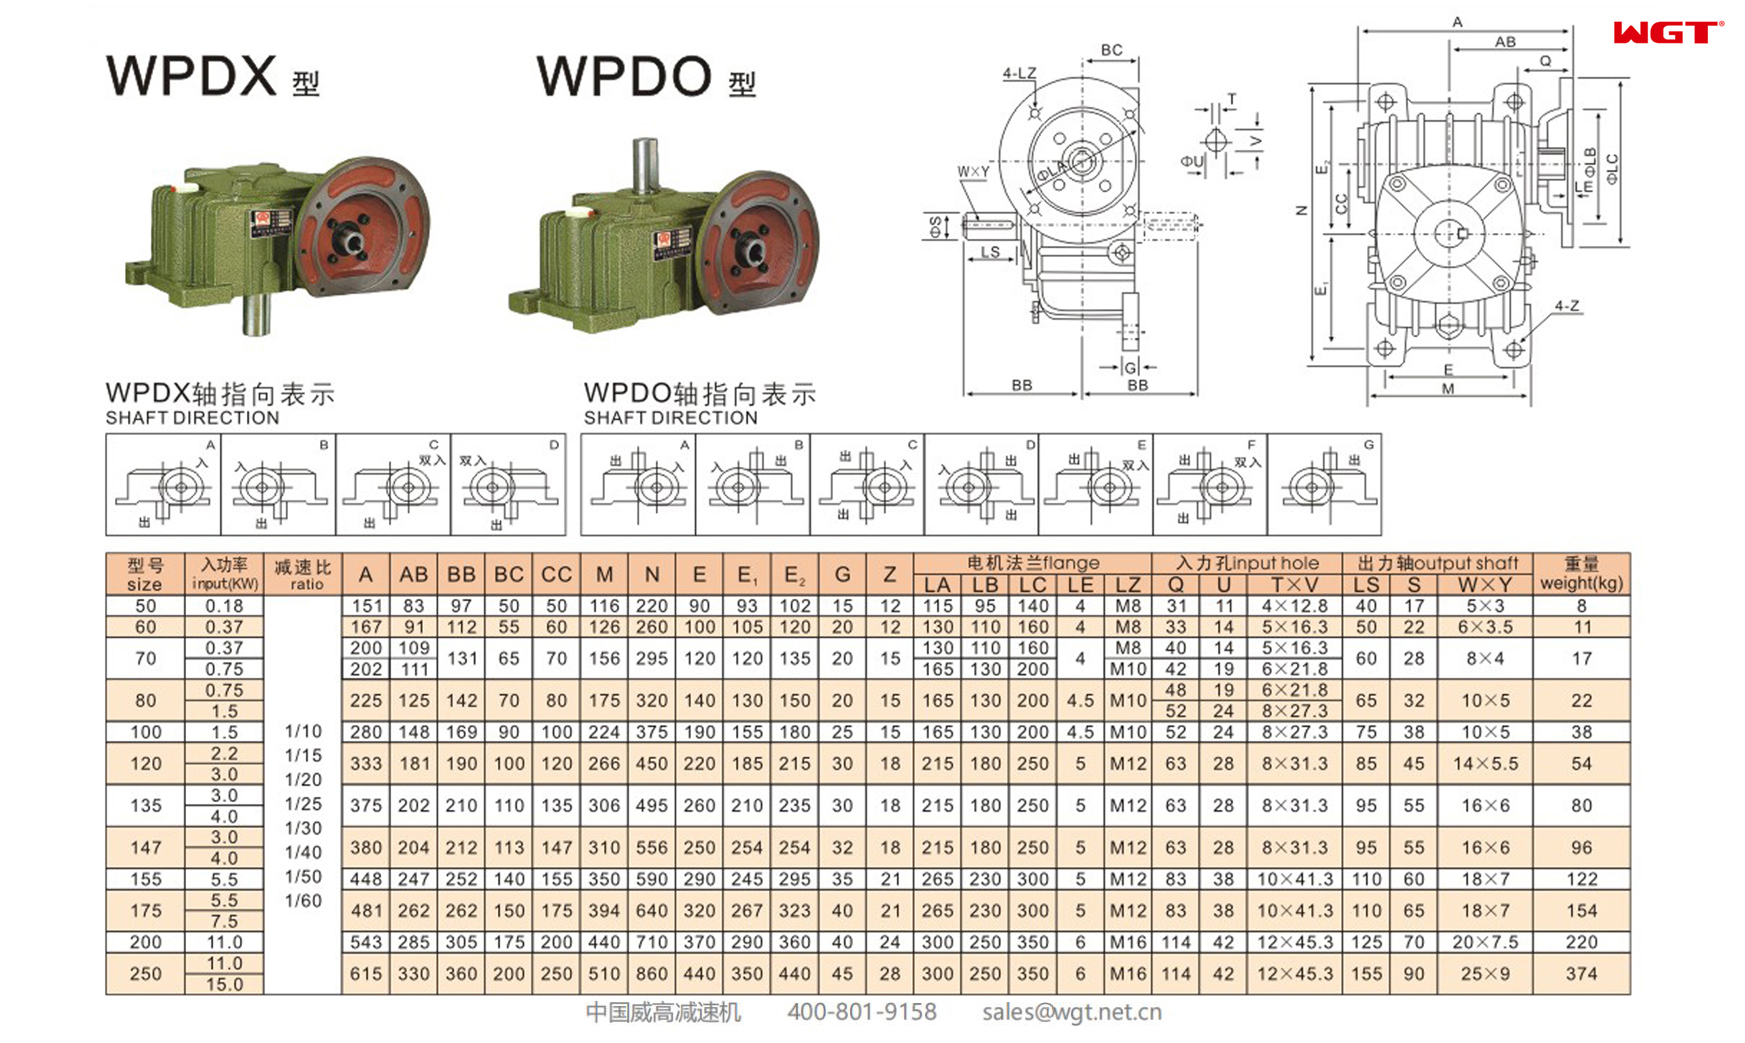 WPDX147 Червячный редуктор Односкоростной редуктор